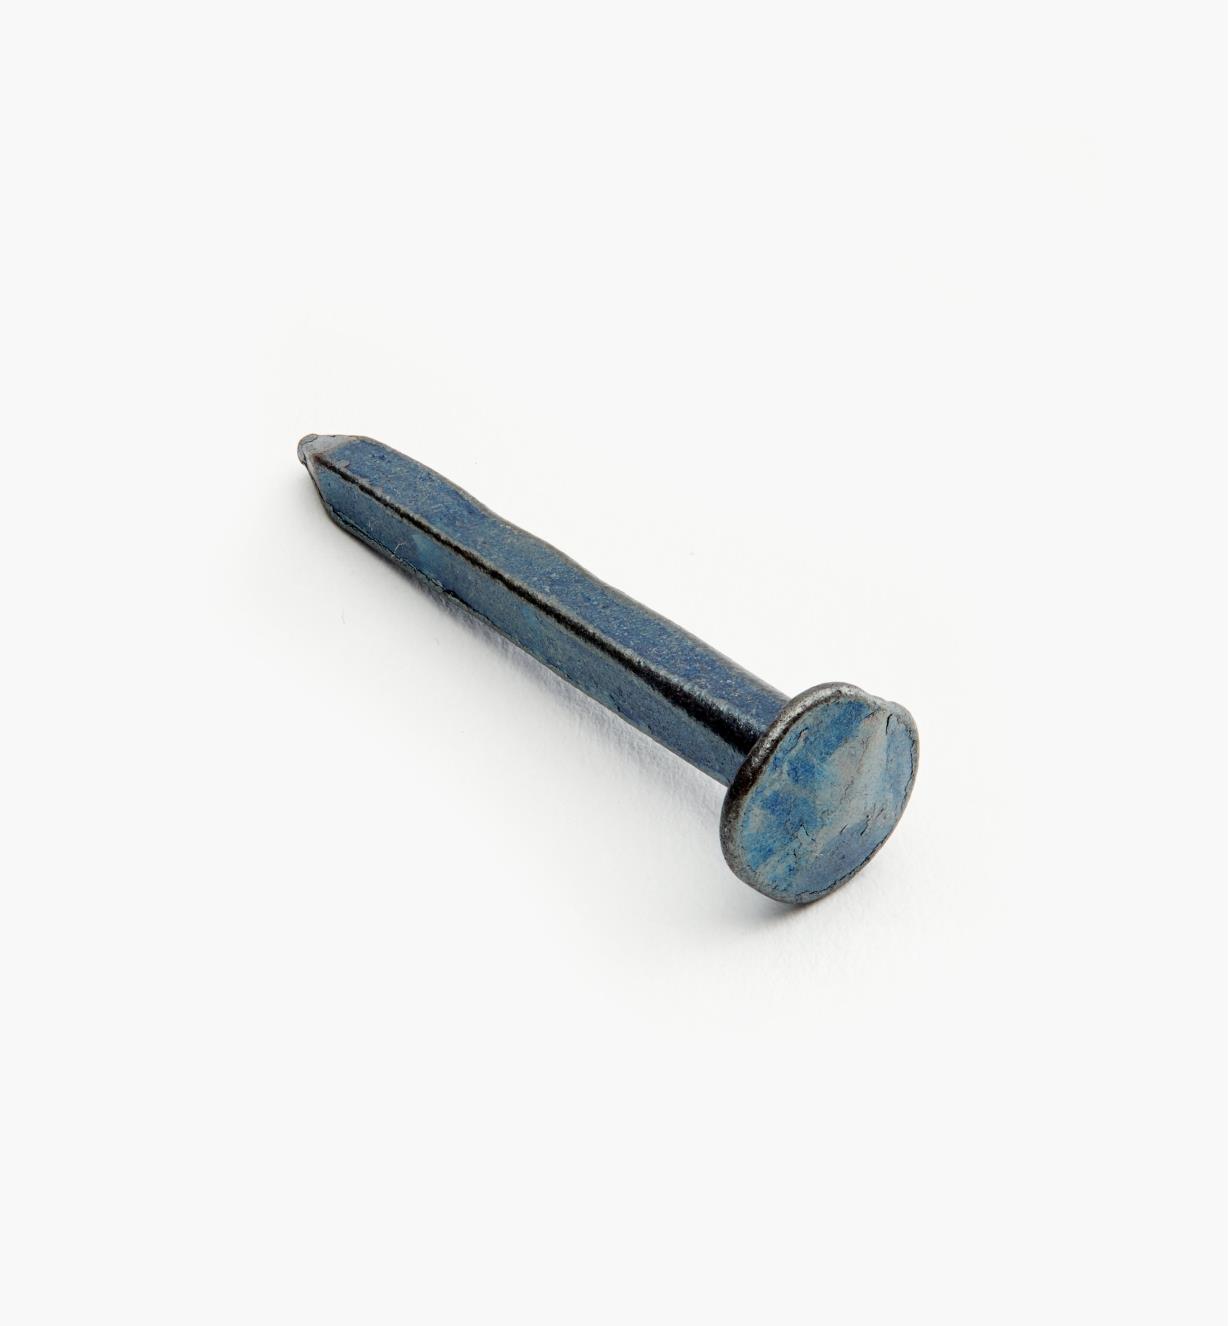 91Z5013 - Clous forgés de la Clouterie Rivierre en acier bleui, 35 mm (1 3/8 po – 4d), lot de 50